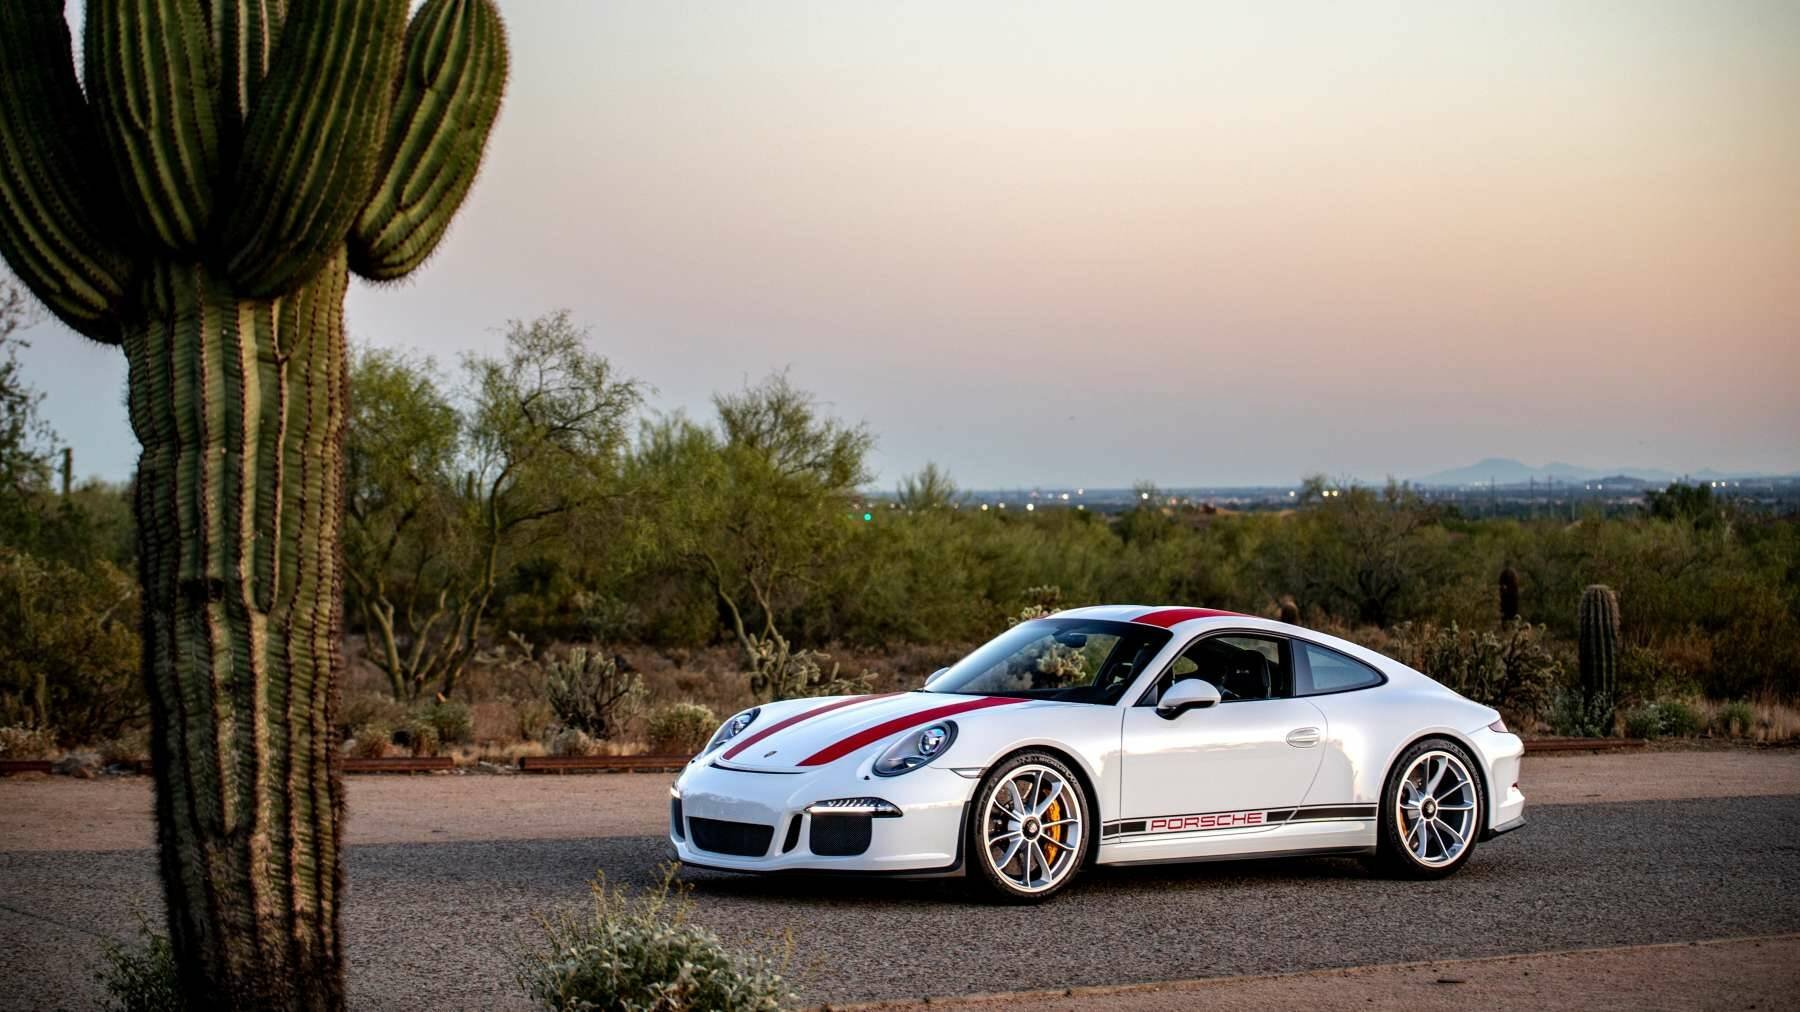 Porsche 911 R besides cactus in the USA